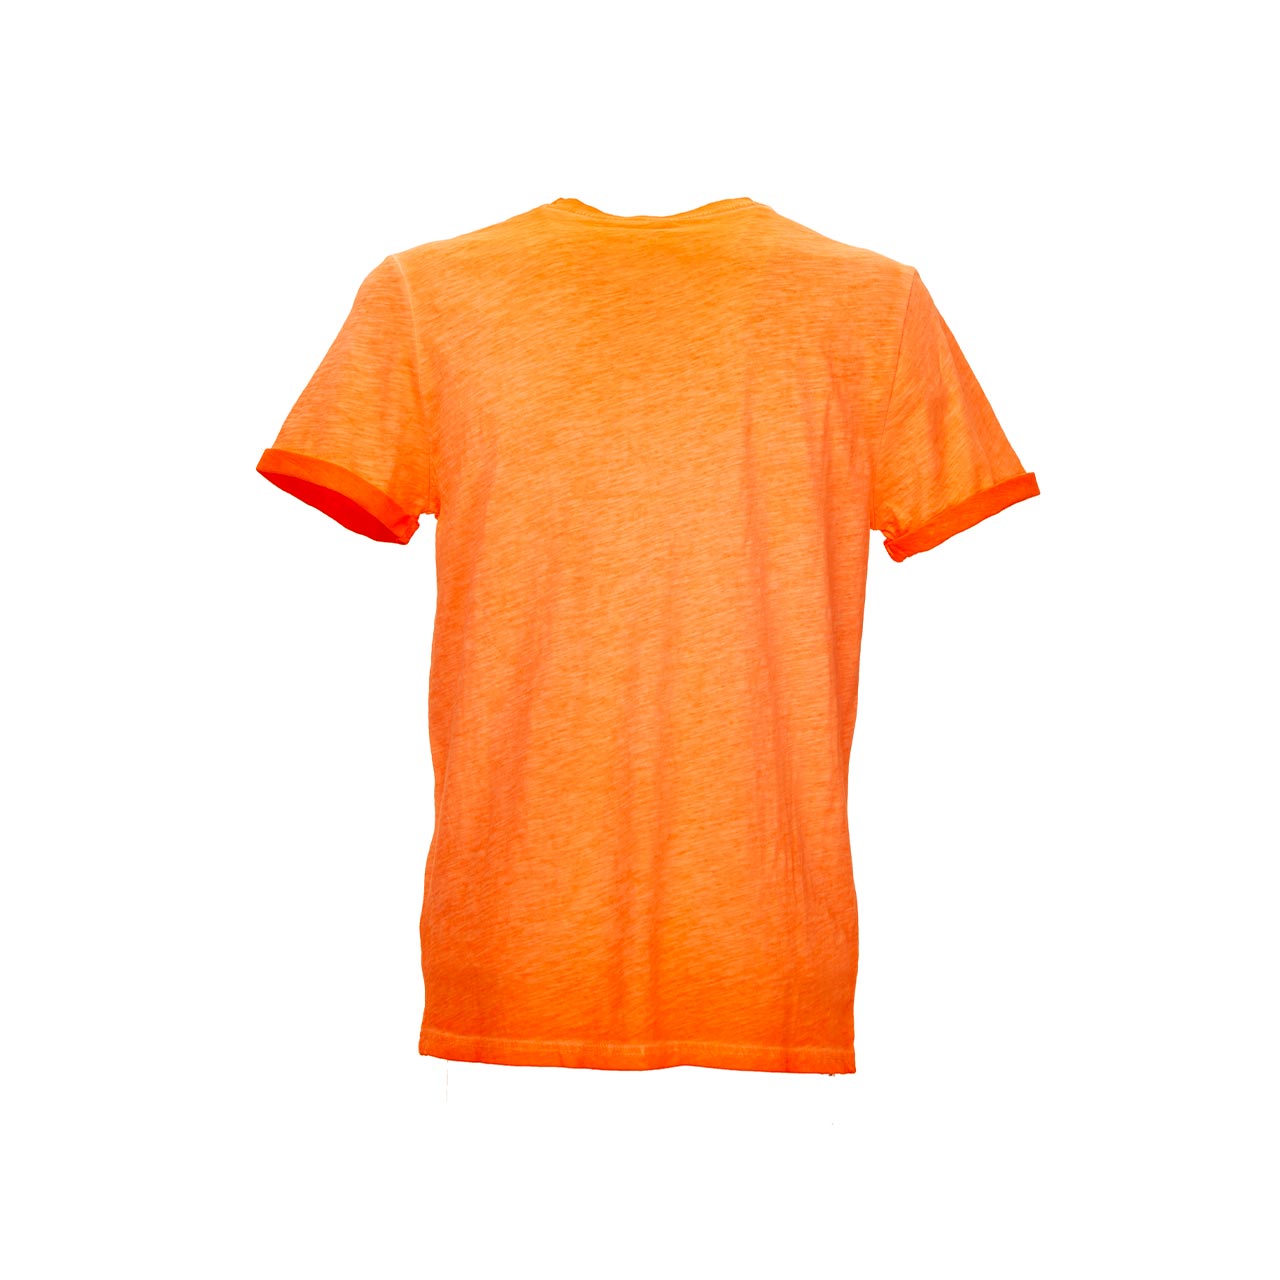 Tshirt da lavoro upower modello fluo colore orange fluo vista retro